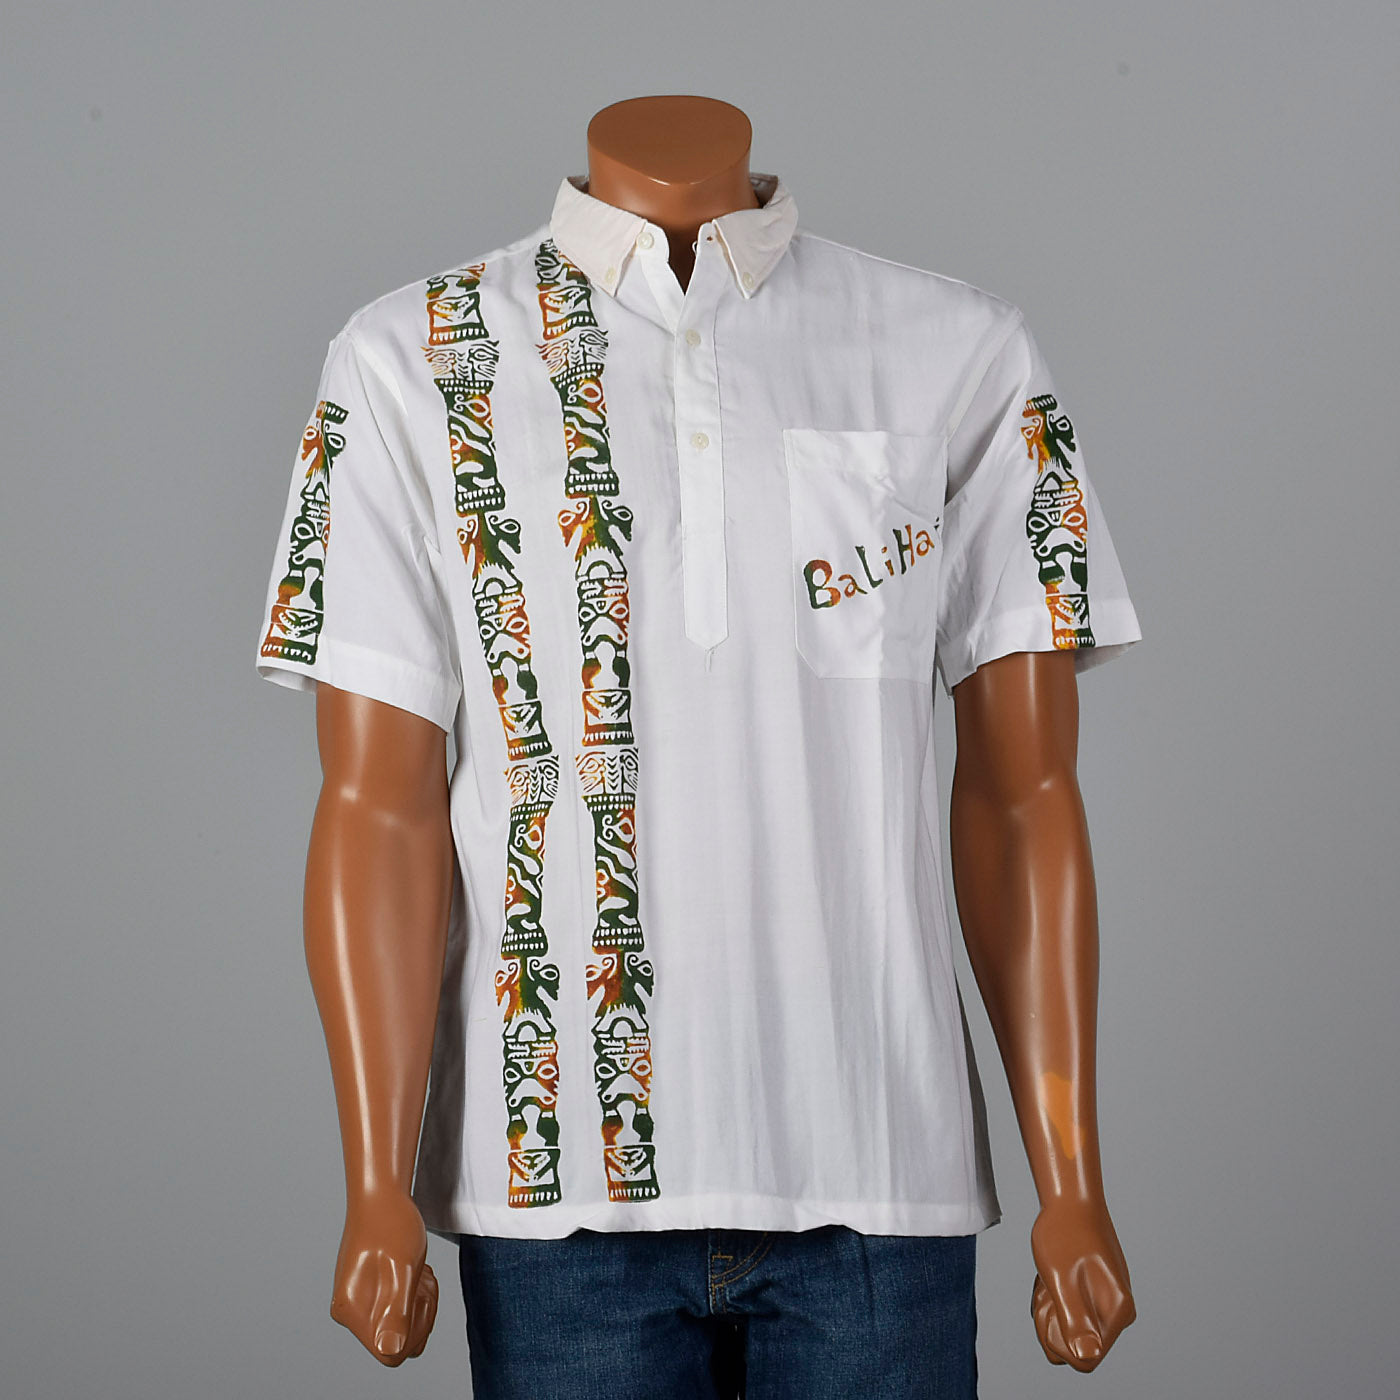 1960s Bali Hai Uniform Shirt